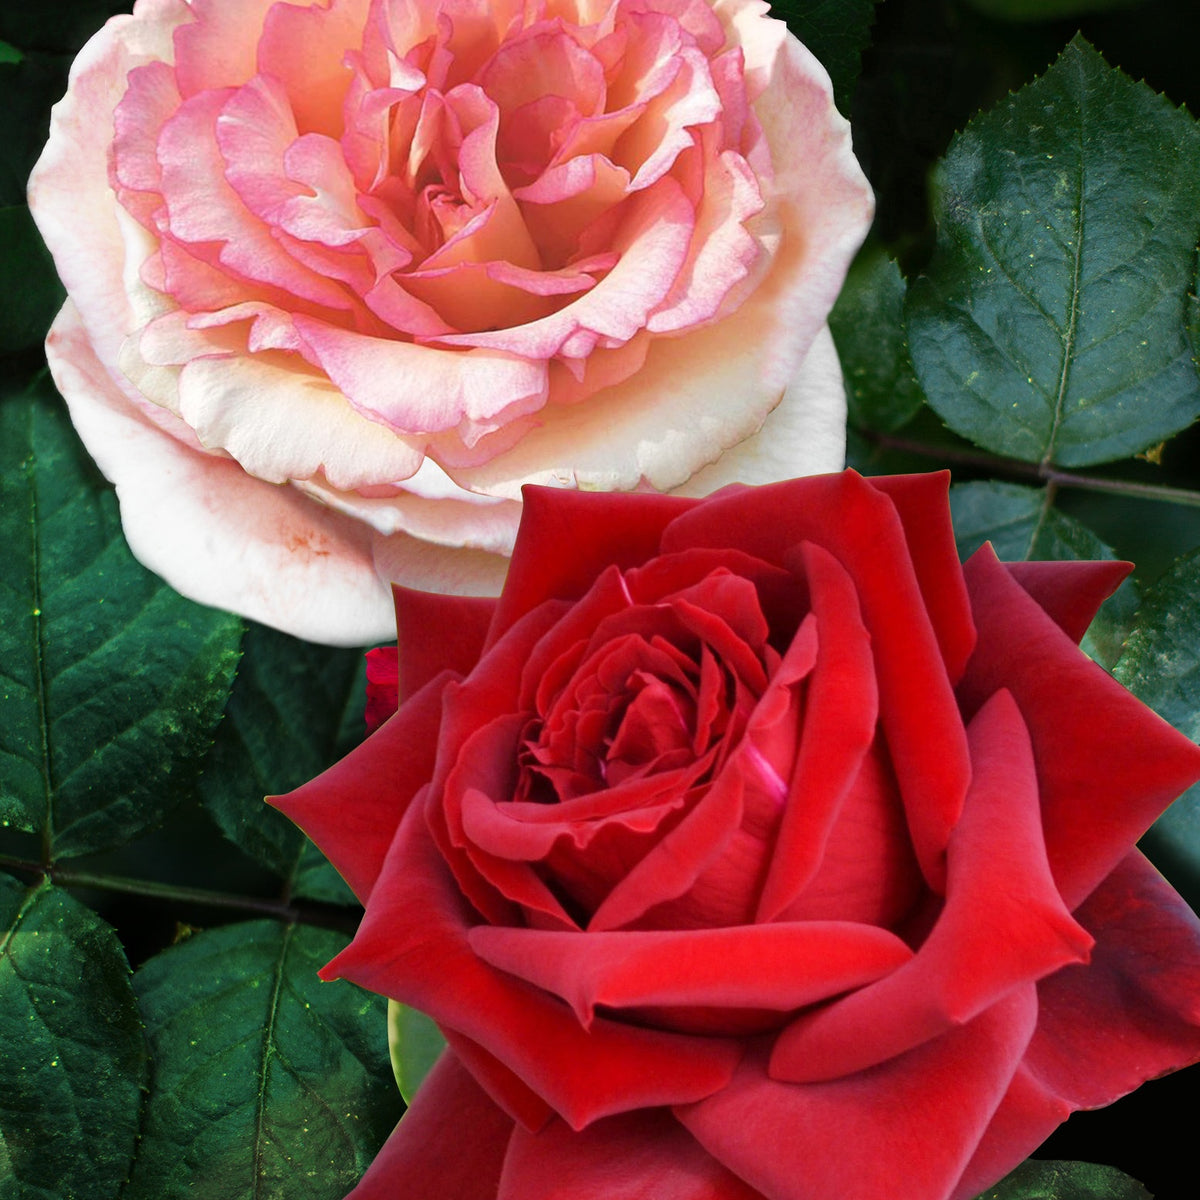 2 Rosiers buissons résistants aux maladies - Rosa Grande Amore, Souvenir de Baden Baden - Rosiers